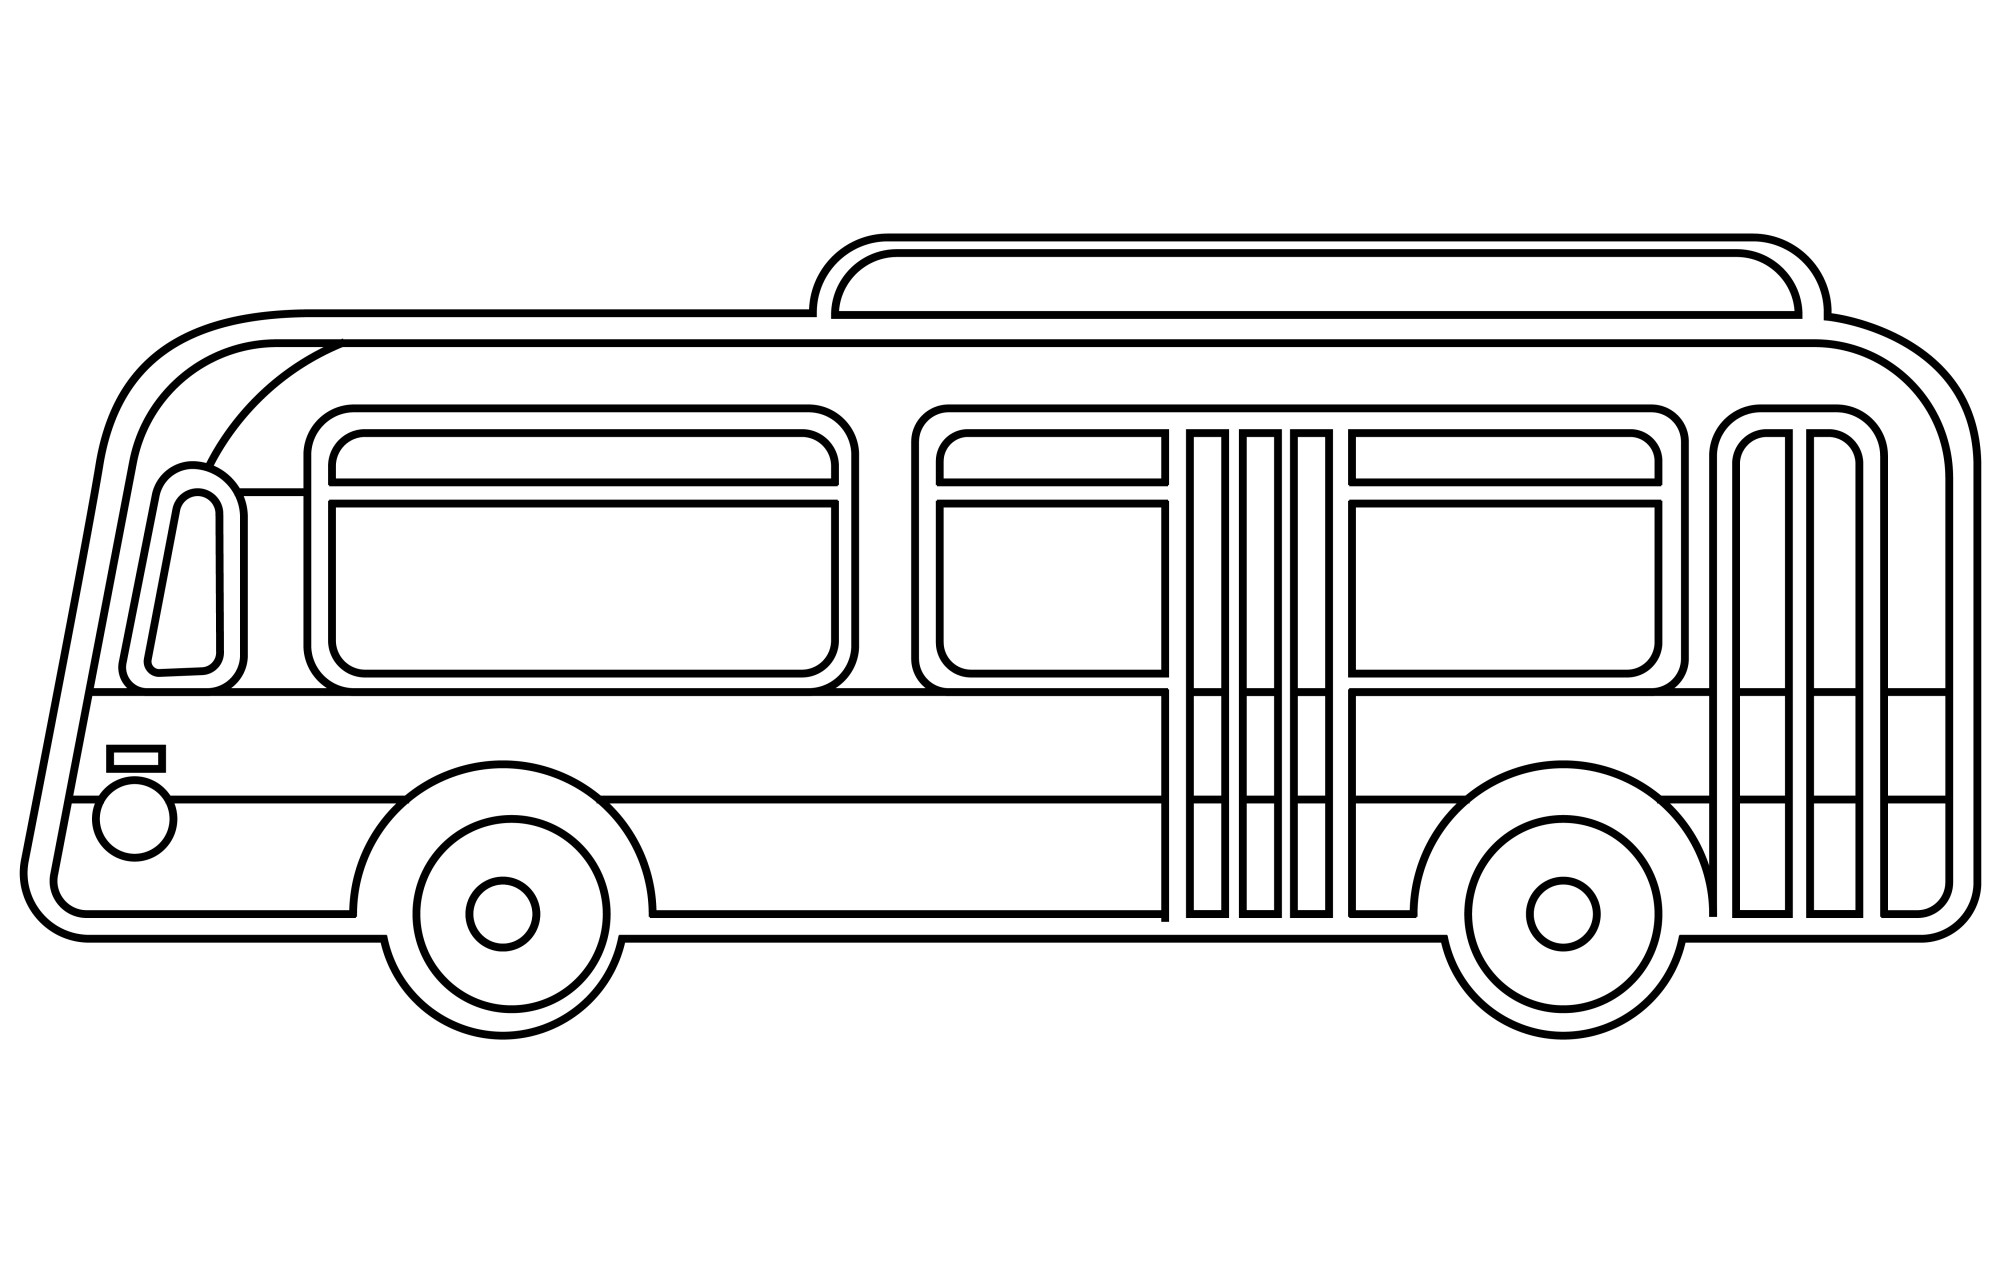 Раскраска для детей: контур городского автобуса